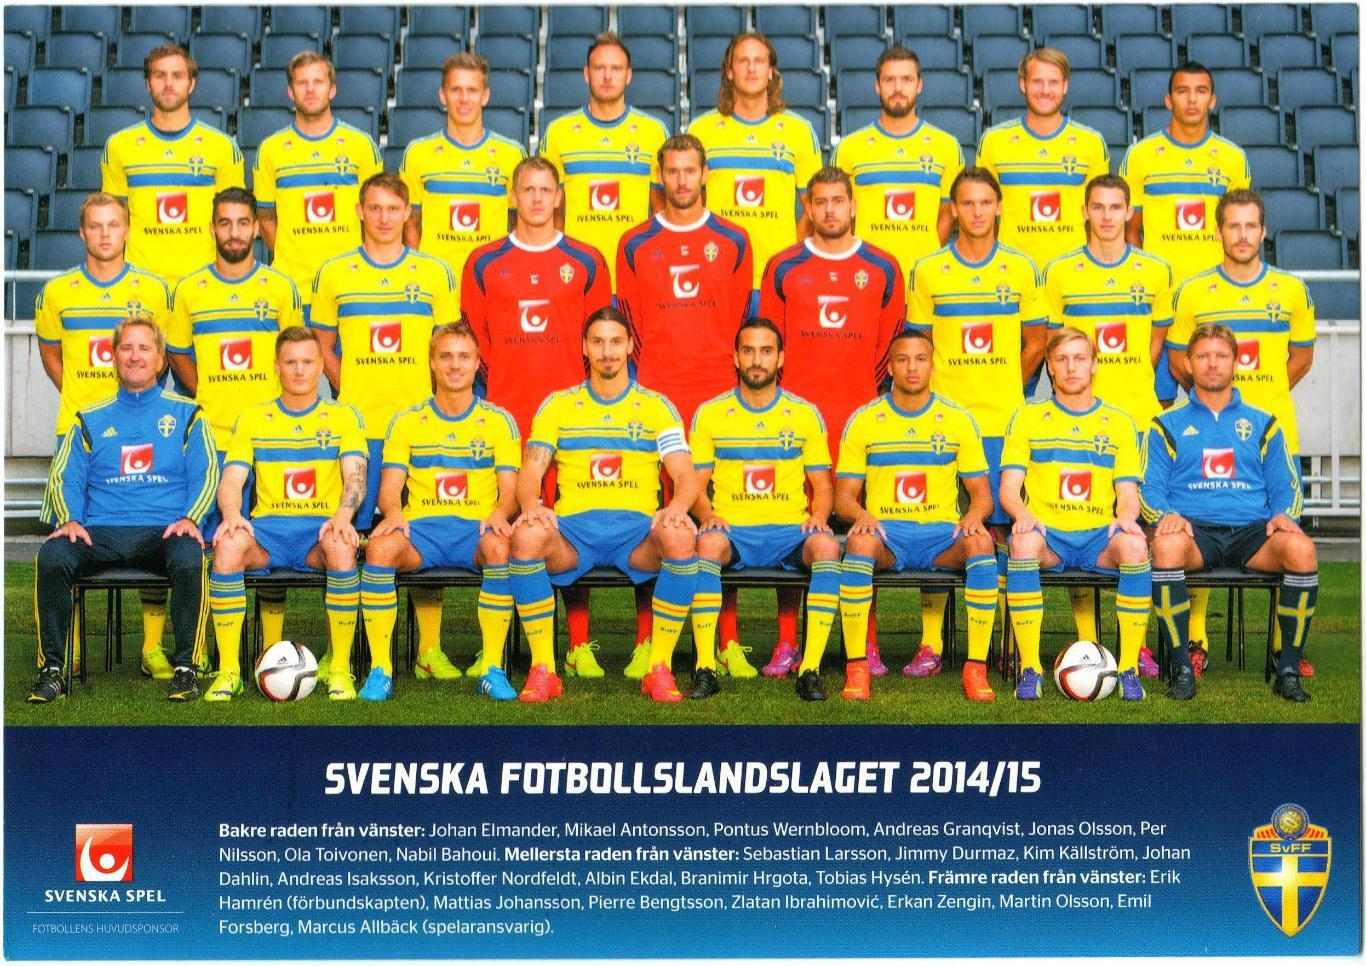 Открытка большого формата Сборная Швеции по футболу 2014-2015 Златан Ибрагимович